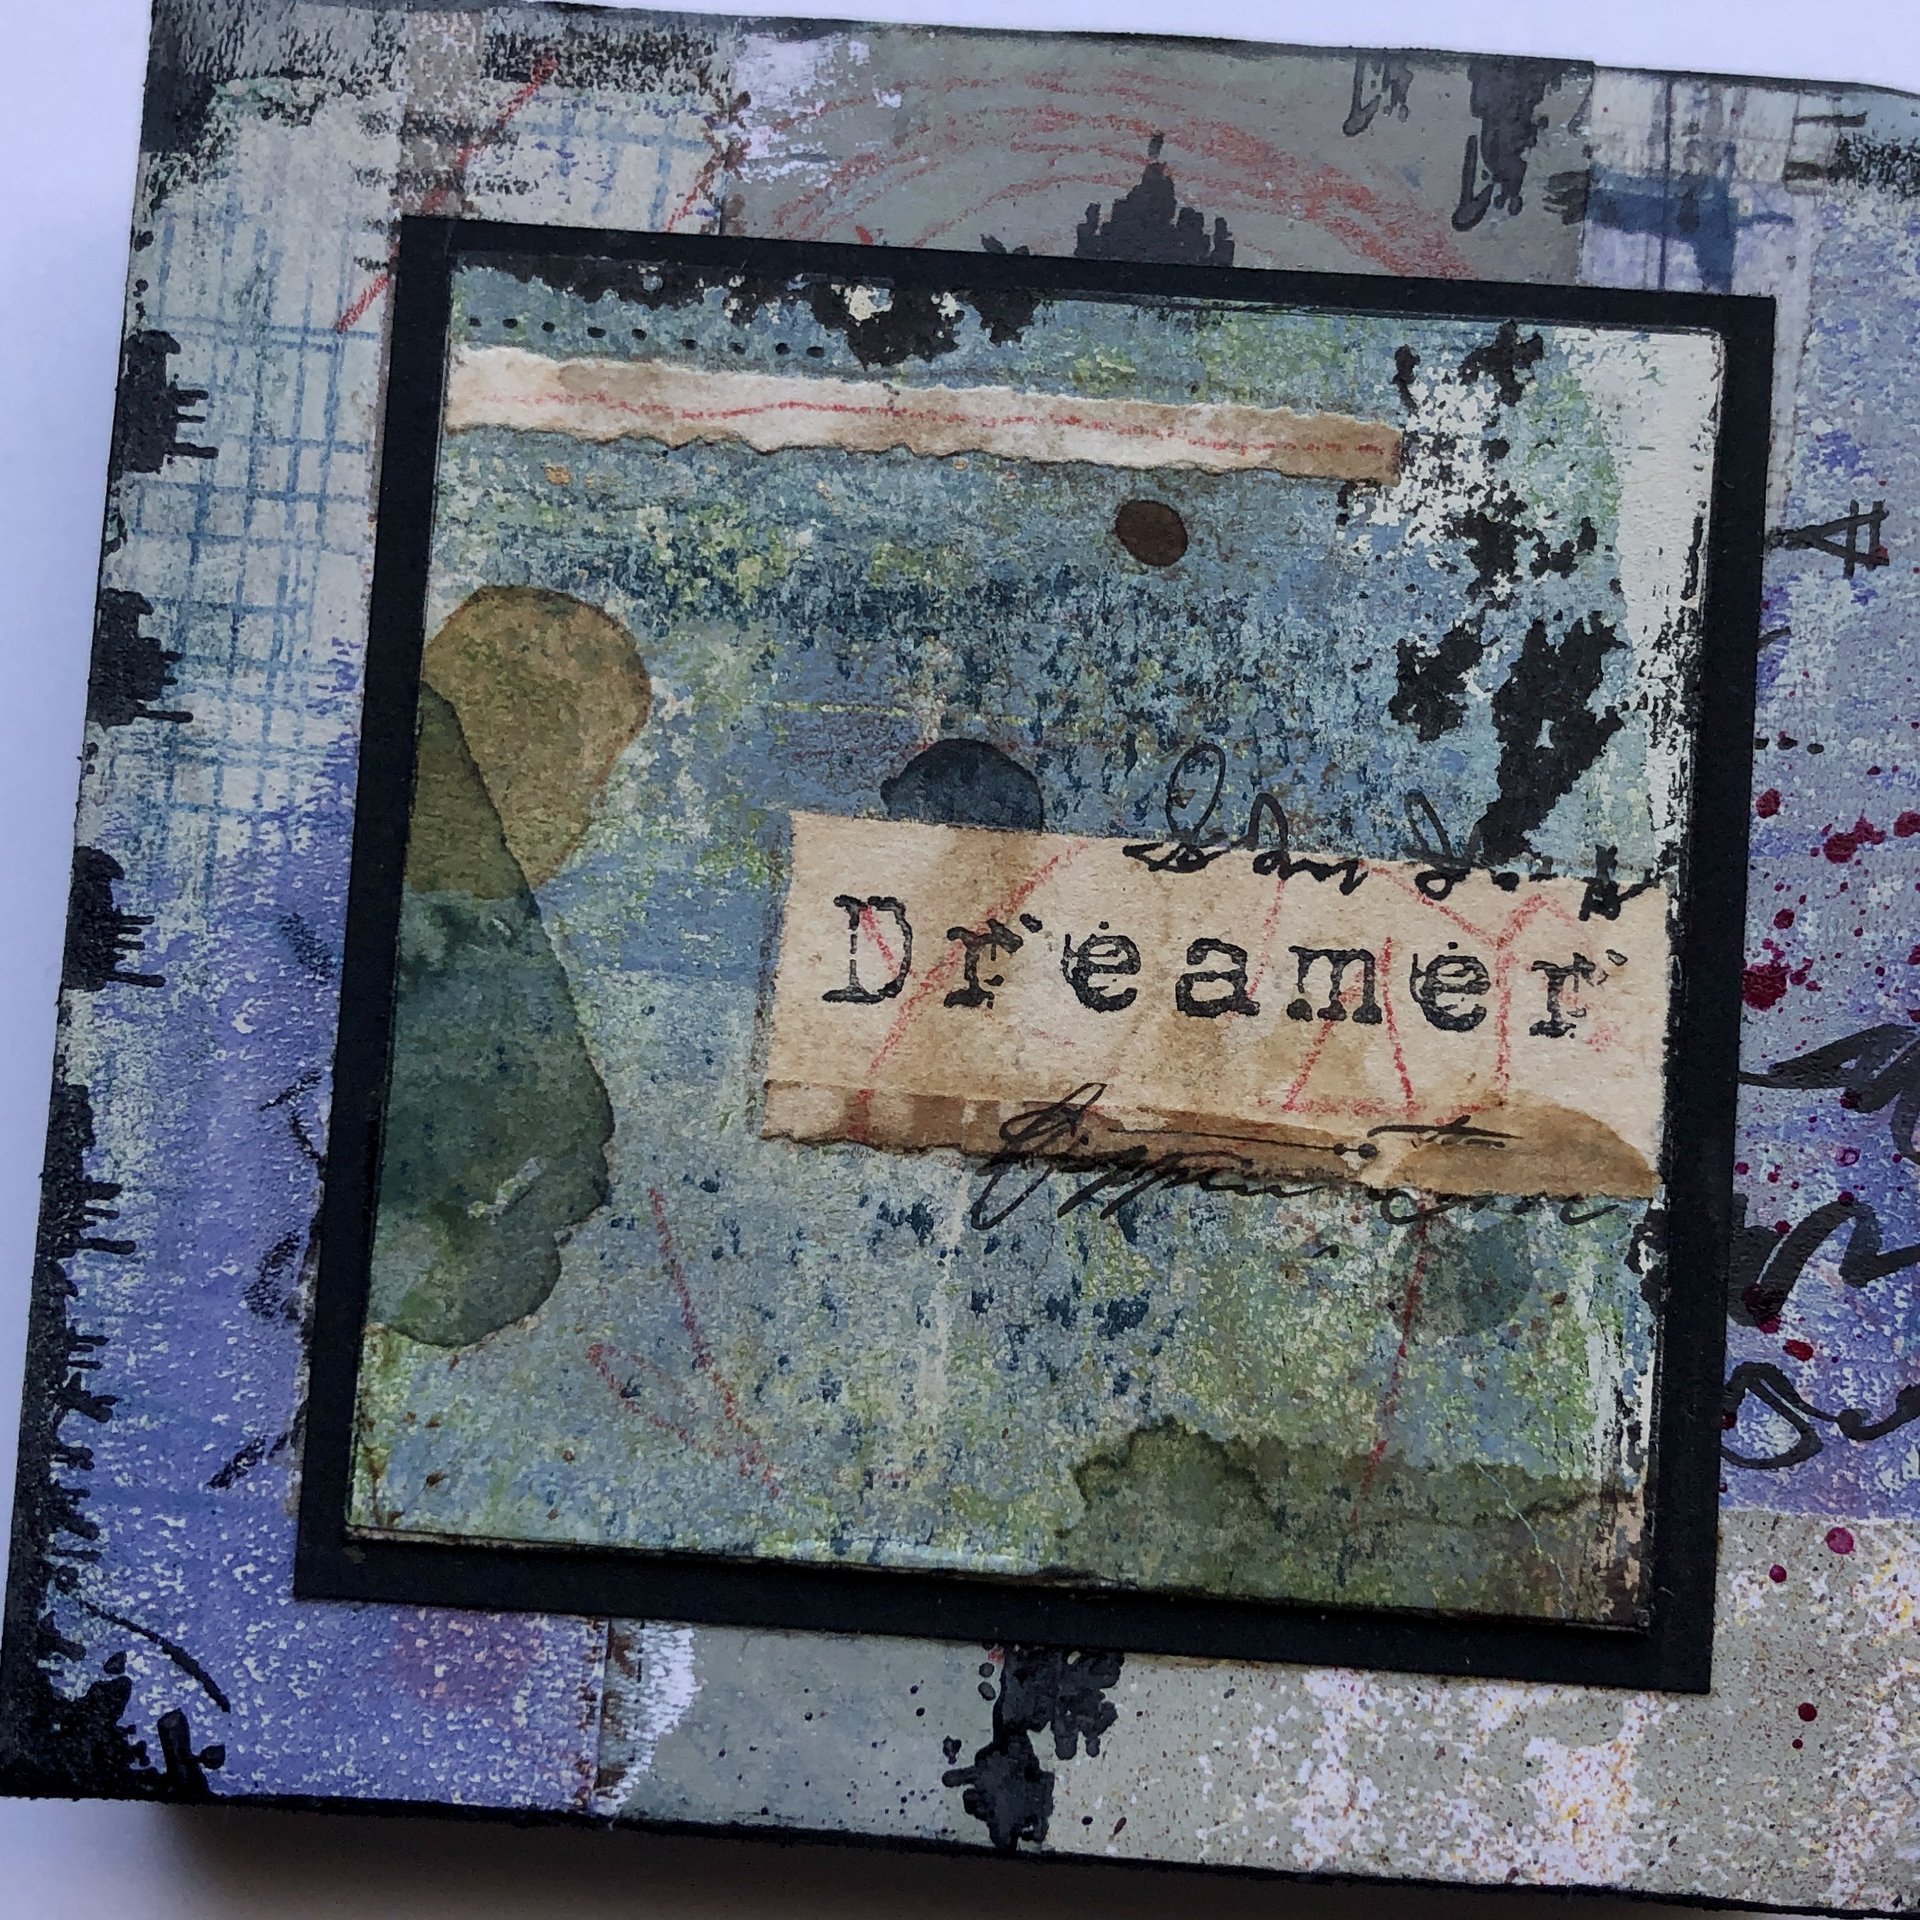 Dreamer: Original Mixed Media Art